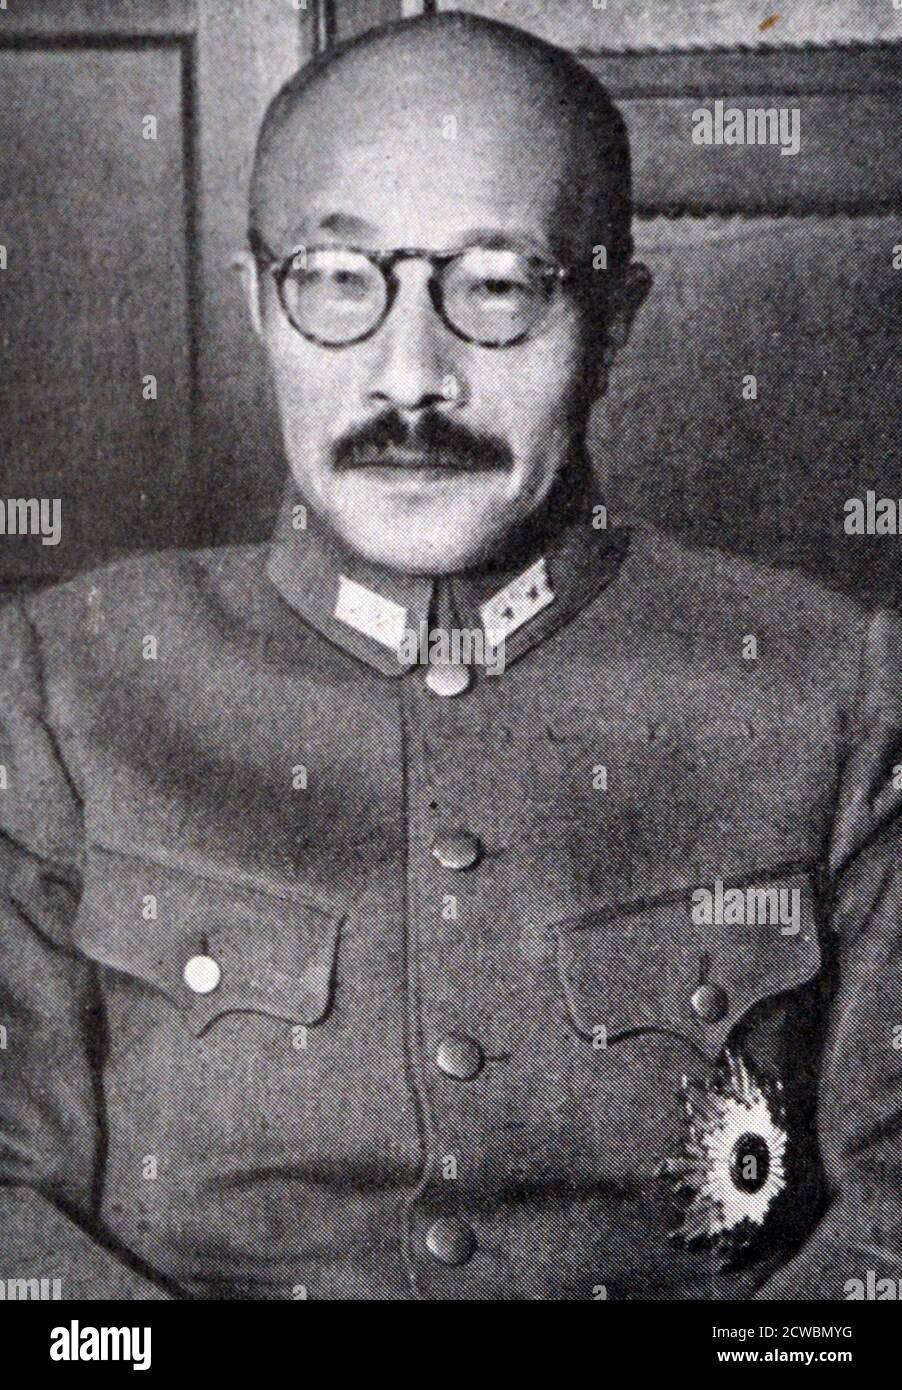 Schwarz-Weiß-Foto des Zweiten Weltkriegs (1939-1945); General Hideki Tojo (1884-1948), der Premierminister von Japan am 14. Oktober 1941 wurde, nahm eine feindliche Haltung gegenüber den Vereinigten Staaten sofort nach dem Beitritt zur Regierung. Stockfoto